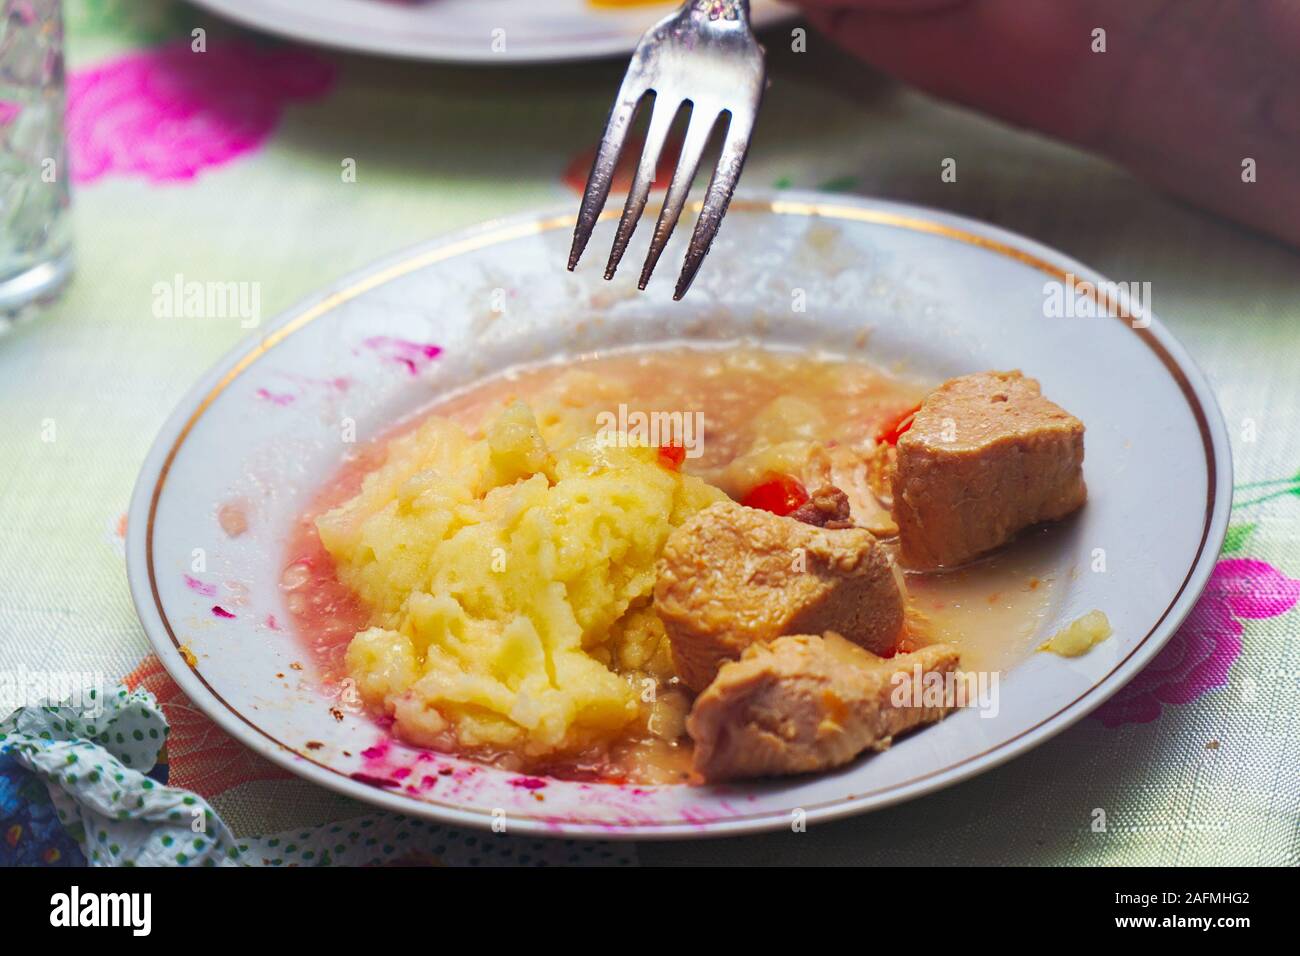 Halb gegessen Essen in einer Platte - Kartoffeln und Fleisch. Speisereste. Selektiver Fokus Stockfoto